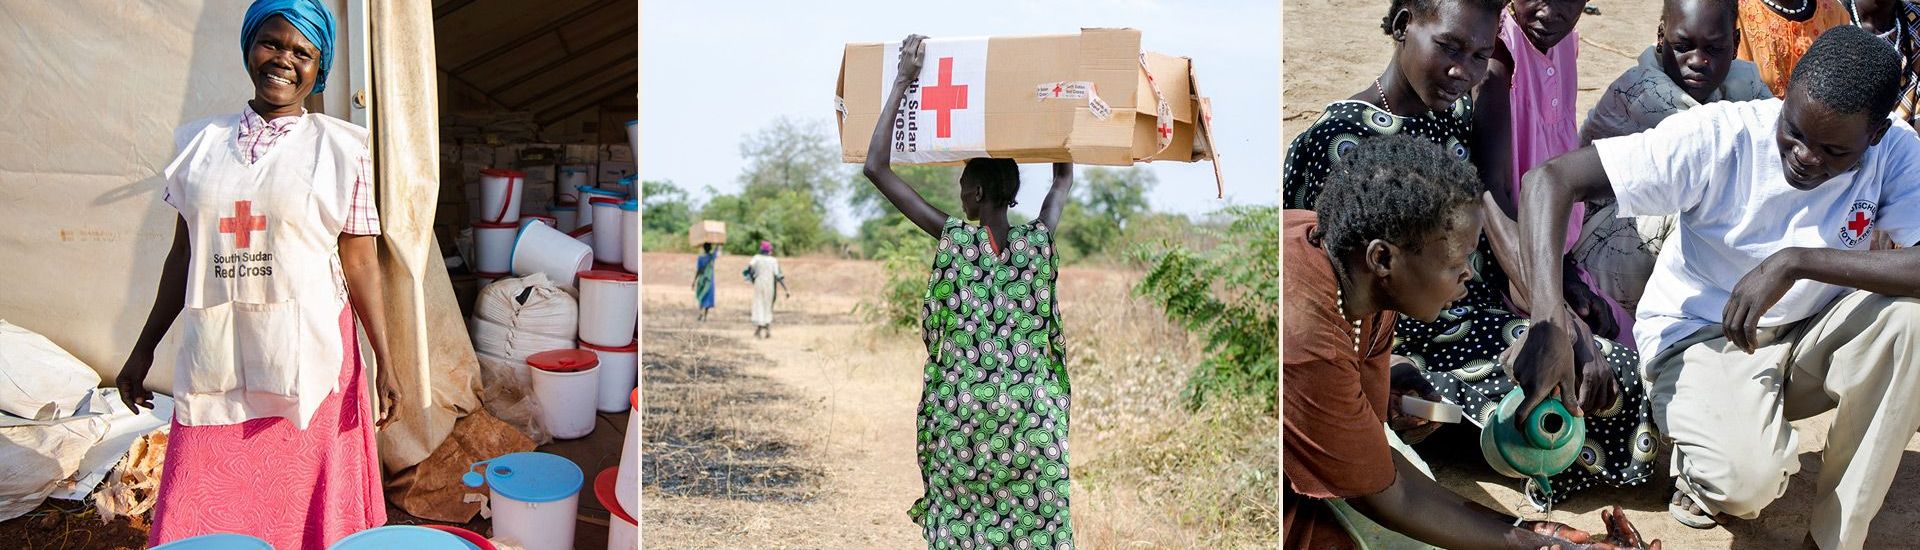 Humanitäre Hilfe im Südsudan 